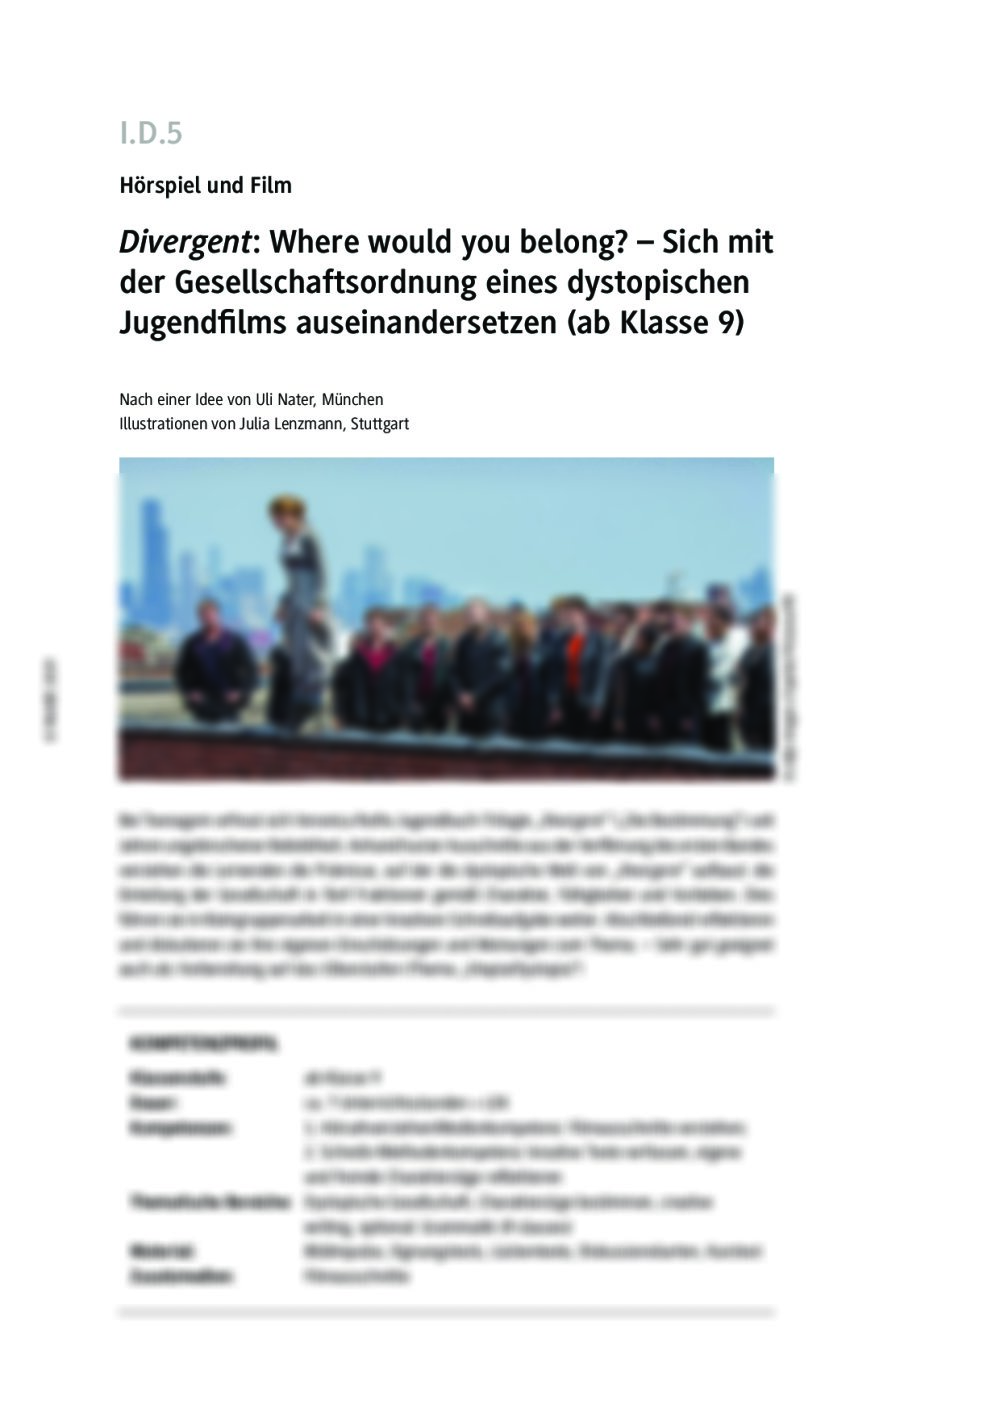 "Divergent": Eine dystopische Gesellschaftsordnung untersuchen - Seite 1